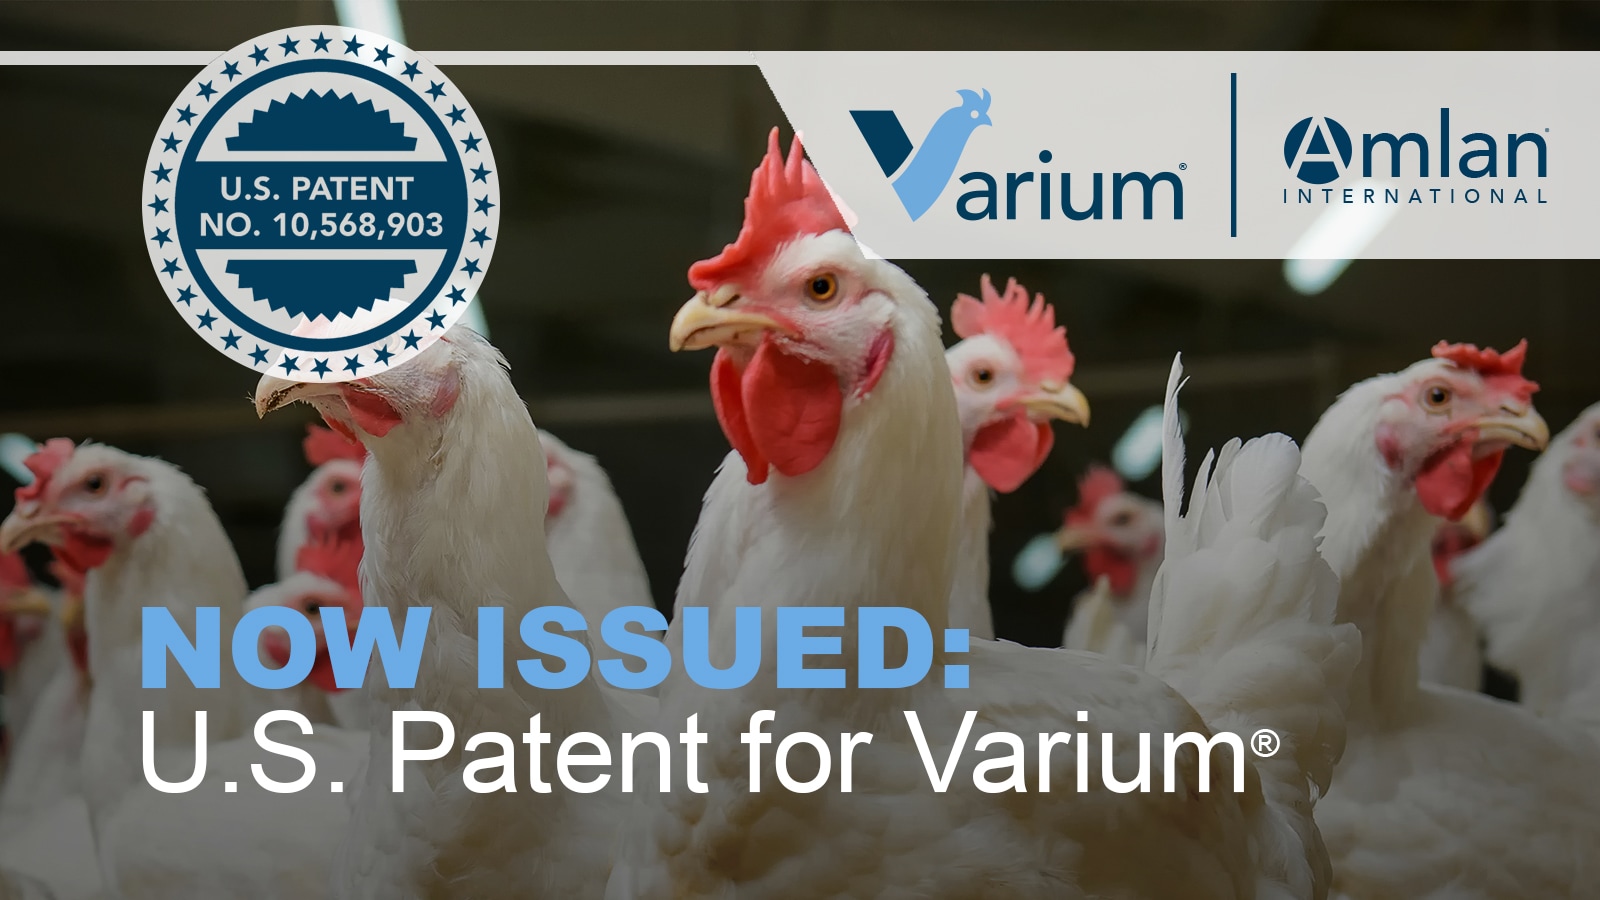 Press release, Varium® patent announcement.